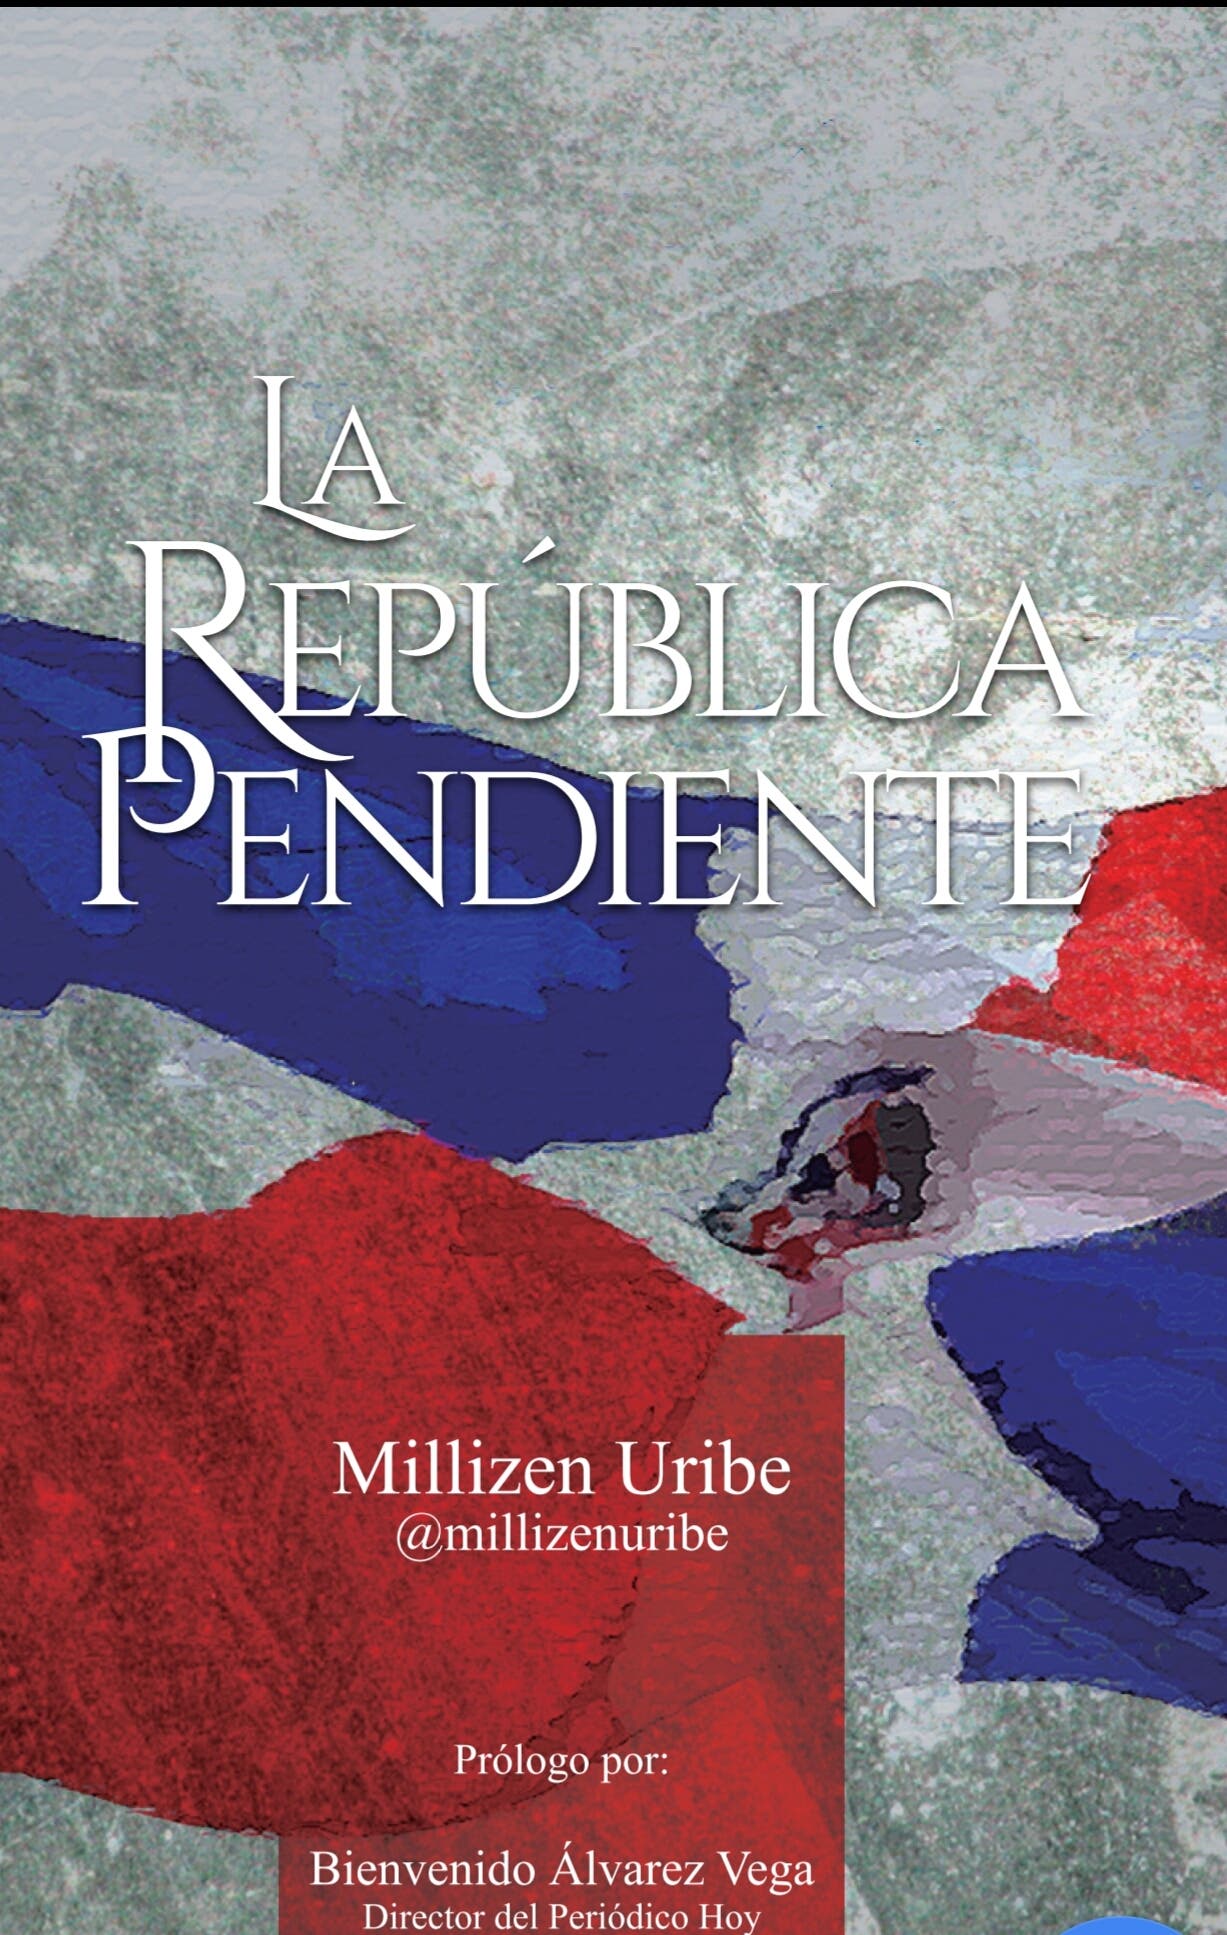 Periodista Millizen Uribe pondrá a circular su libro La República Pendiente